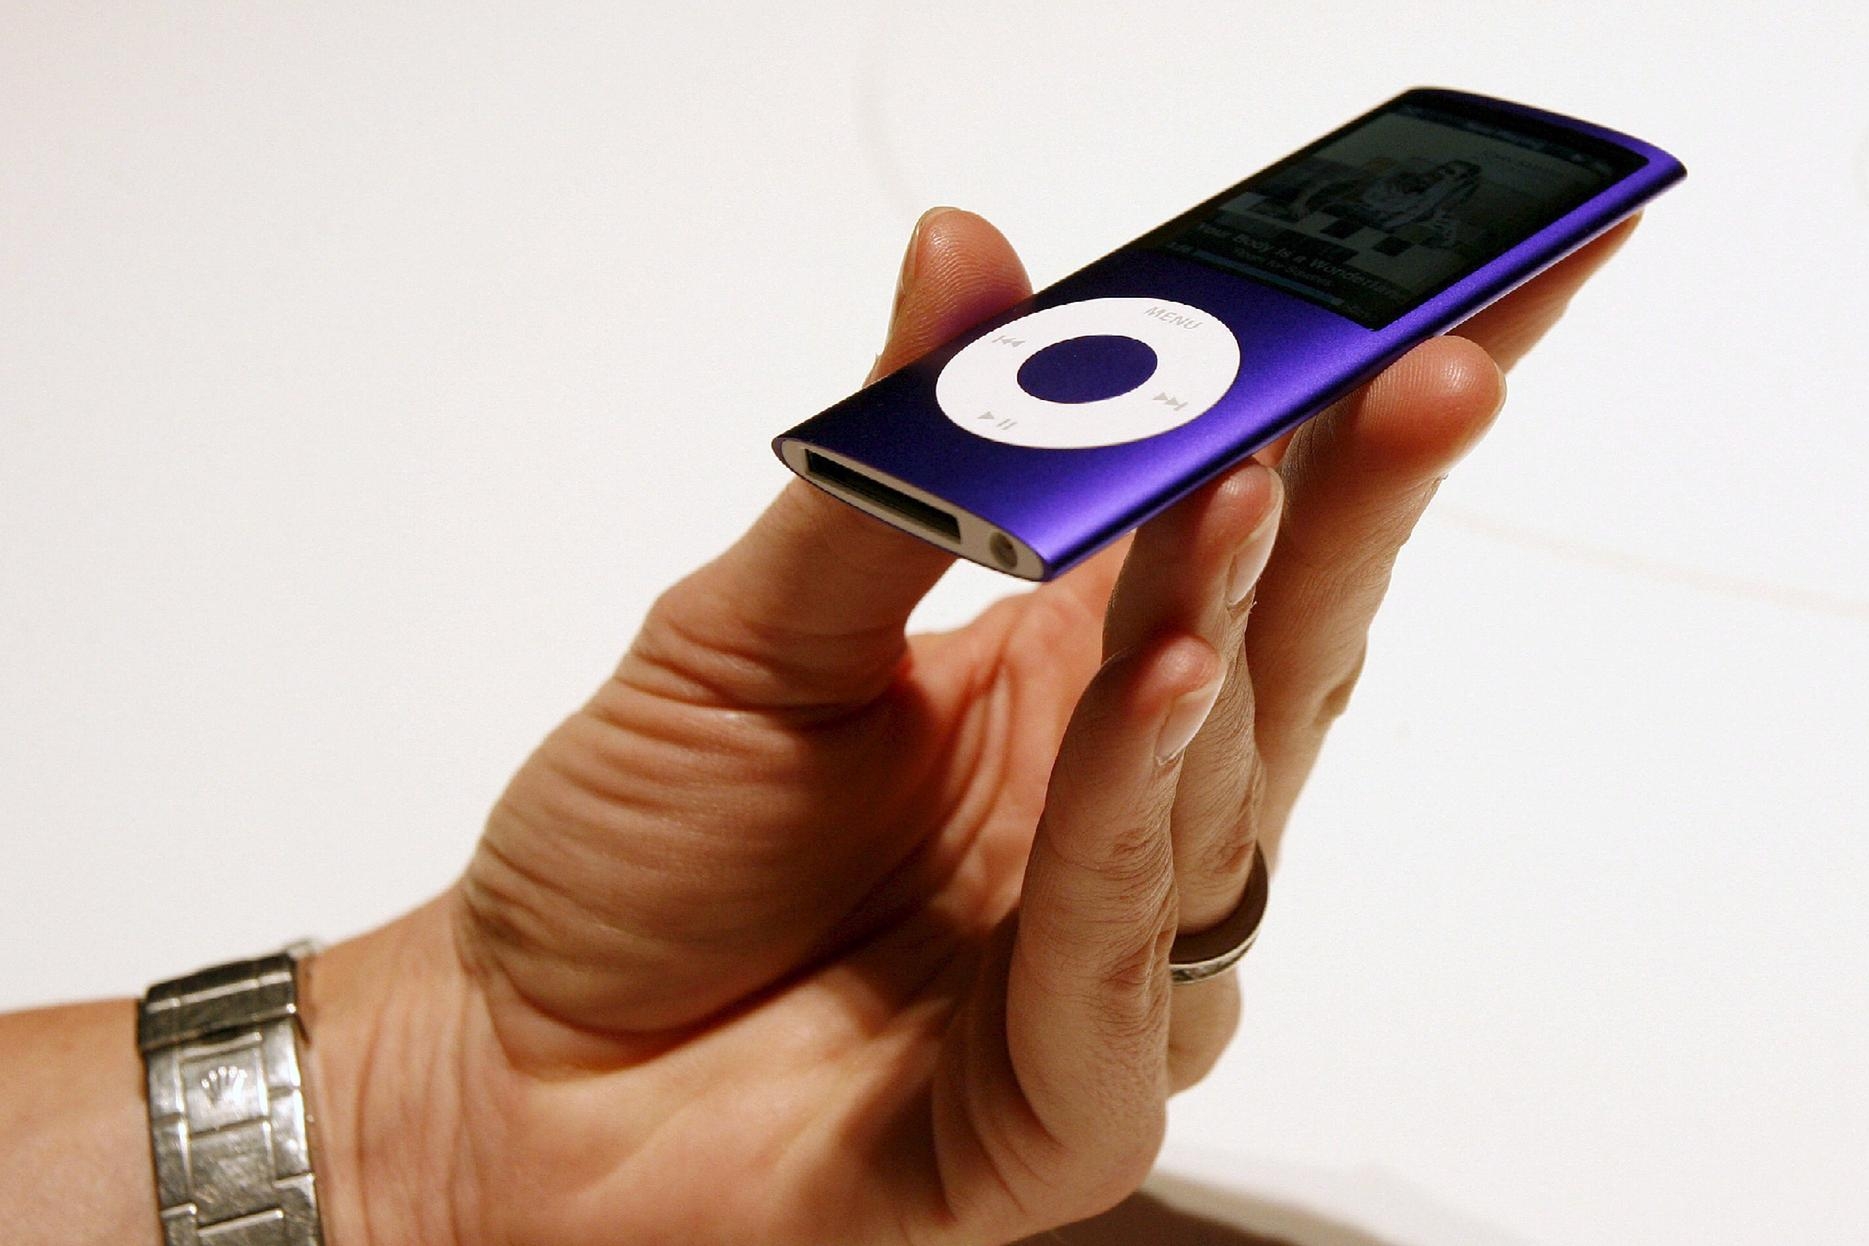 Addio all’iPod: ha rivoluzionato l’ascolto della musica